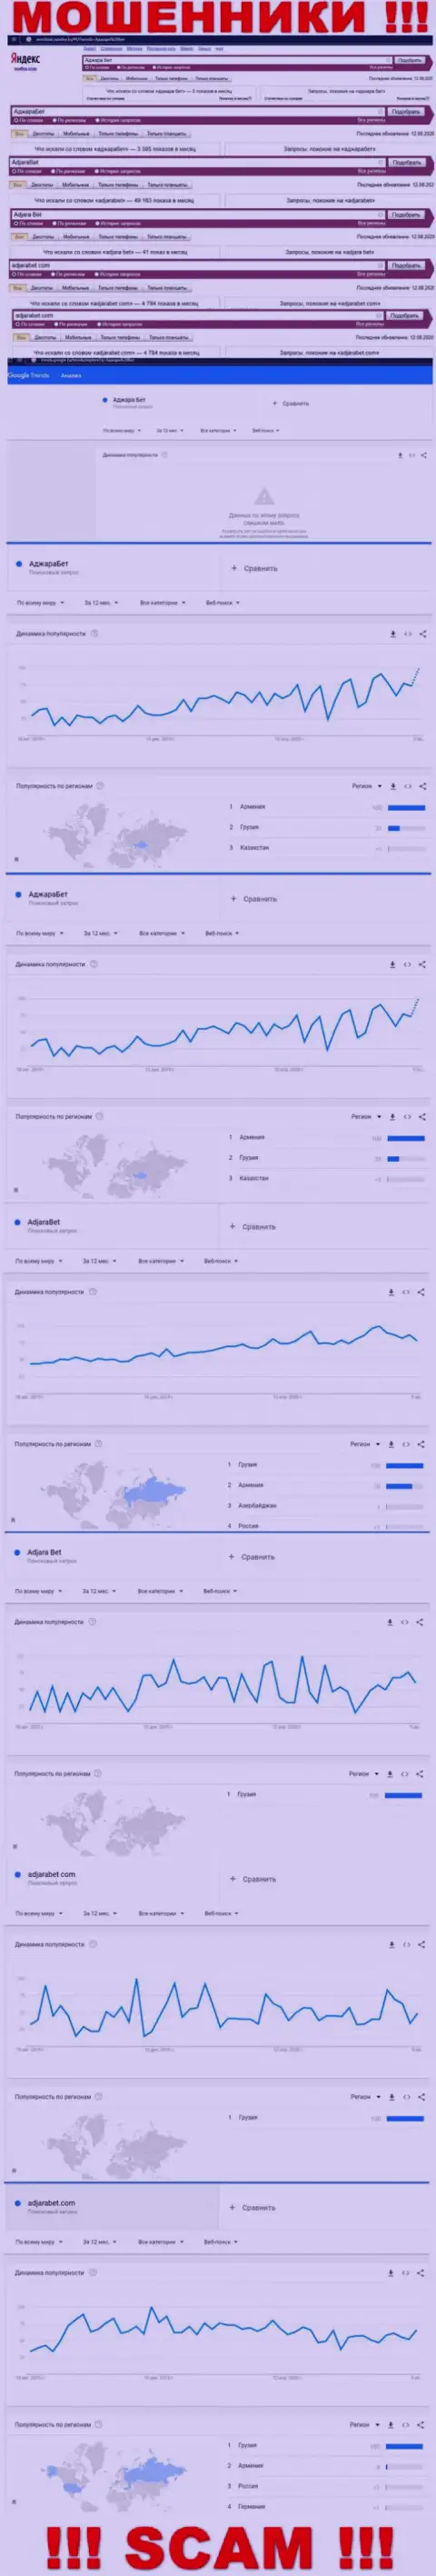 Статистические показатели количества поисковых запросов в глобальной интернет сети по мошенникам AdjaraBet